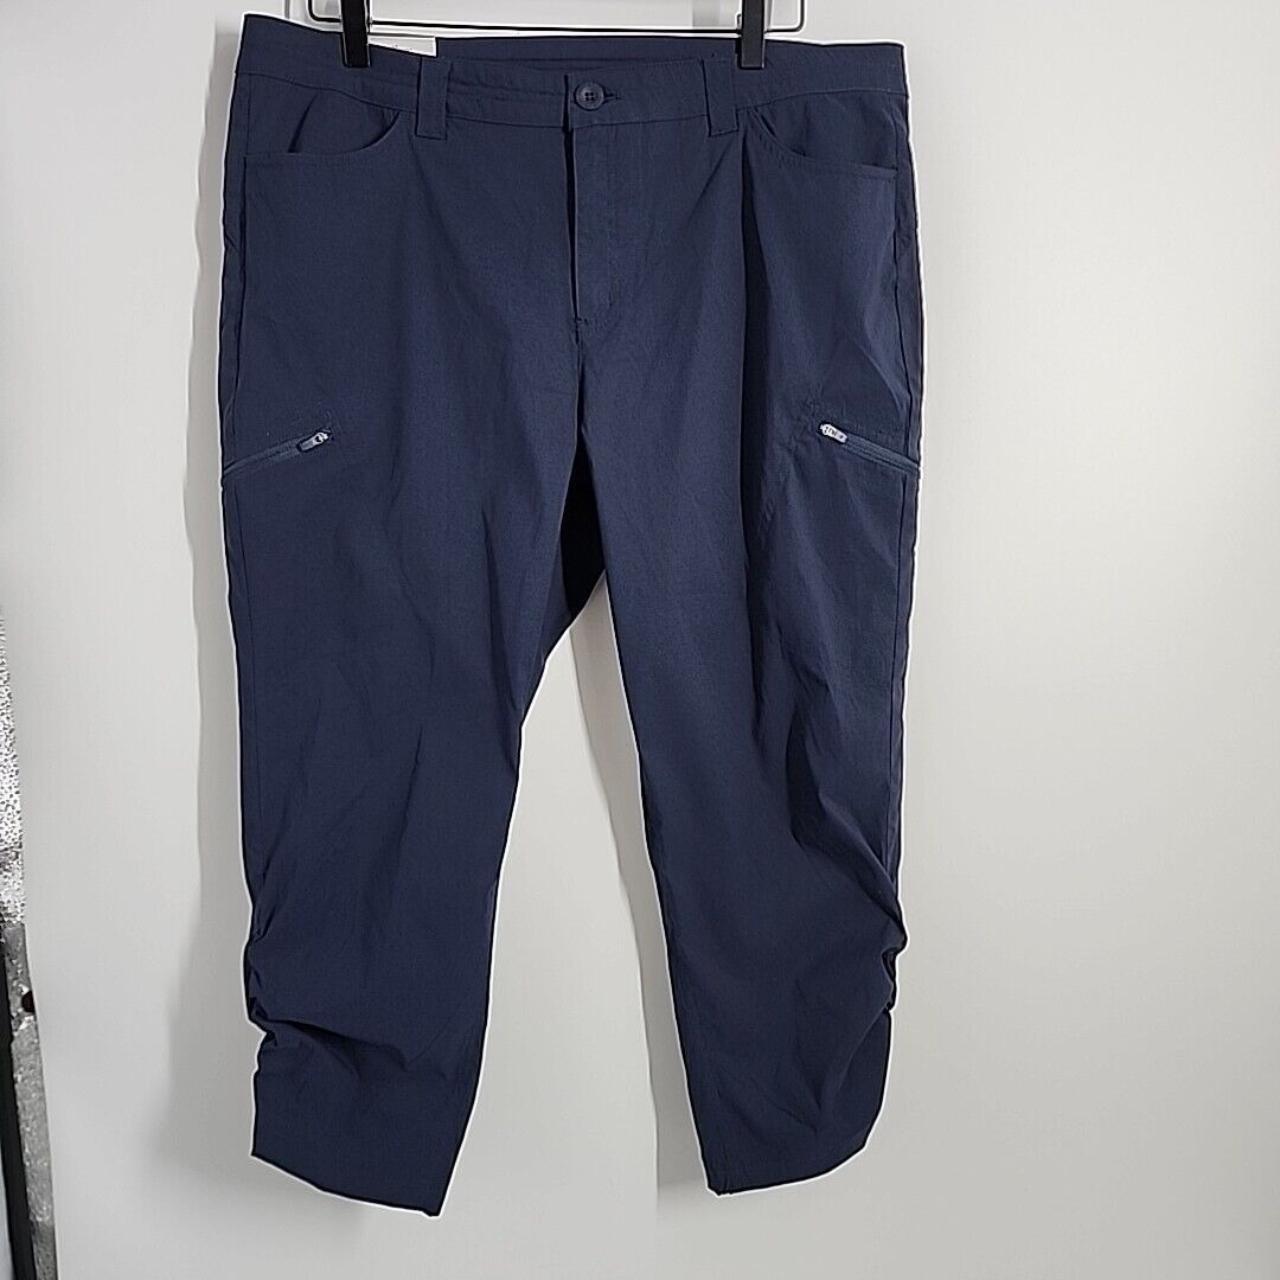 Blue activewear leggings by Eddie Bauer, size - Depop